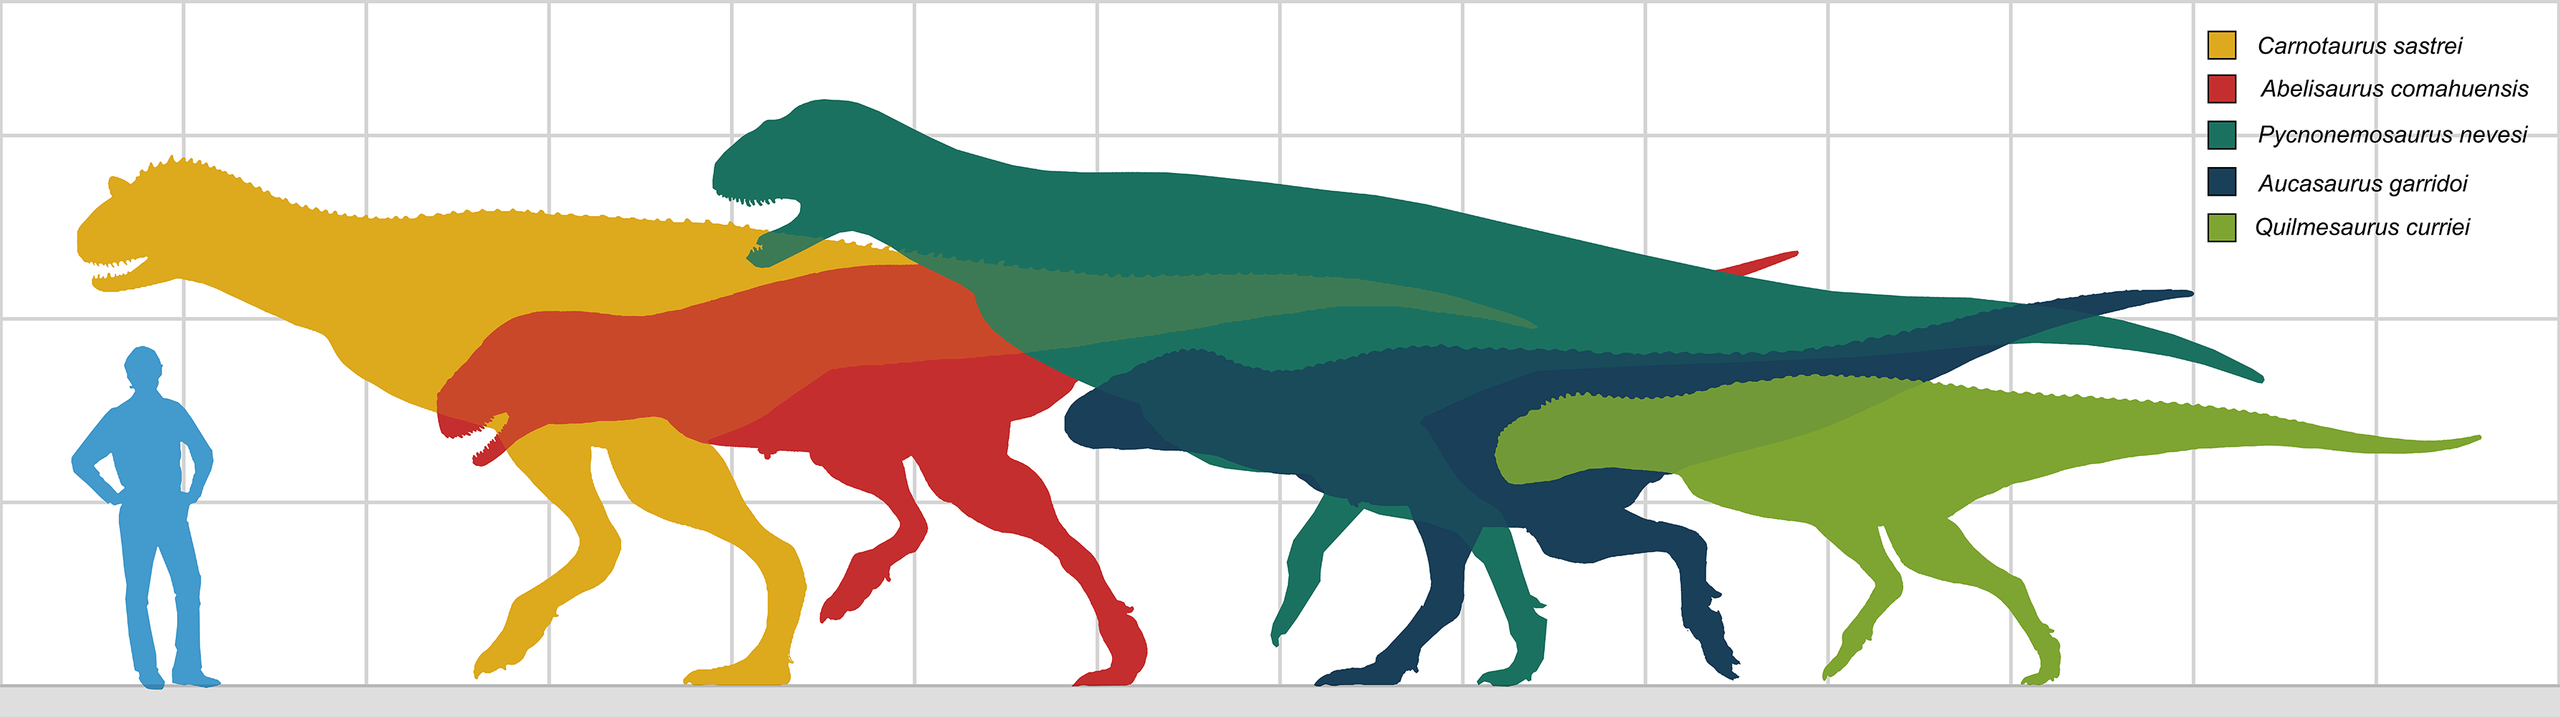 Abelisauridi byli významnou skupinou teropodních dinosaurů střední velikosti, s tělesnou délkou v rozmezí od 5 do 9 metrů. Původce zkamenělé stopy, objevené na území Bolívie, byl však nepochybně větší. Je možné, že dosahoval délky přes 12 metrů a hmo